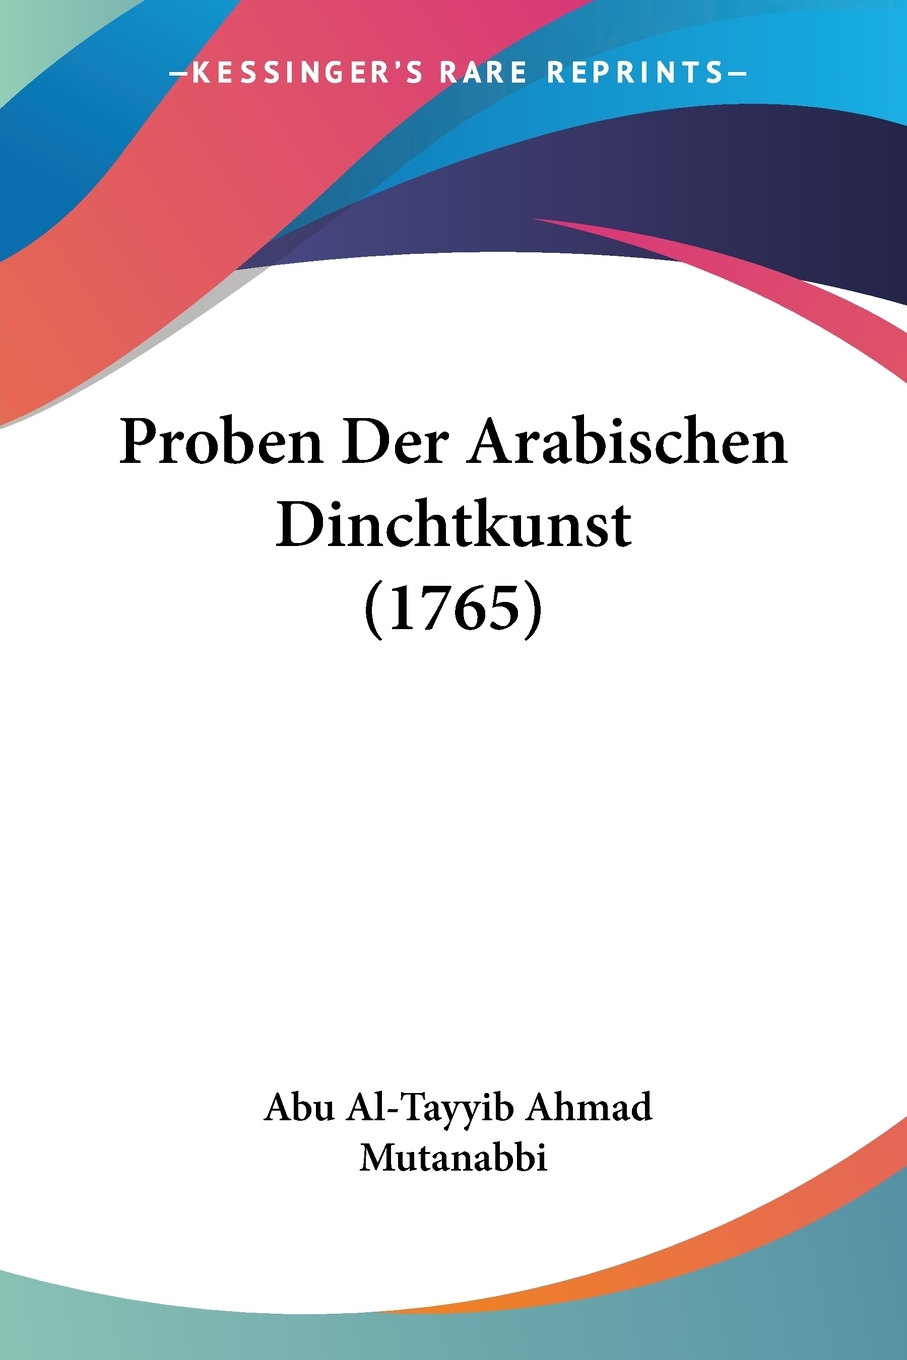 预售按需印刷 Proben Der Arabischen Dinchtkunst(1765)德语ger